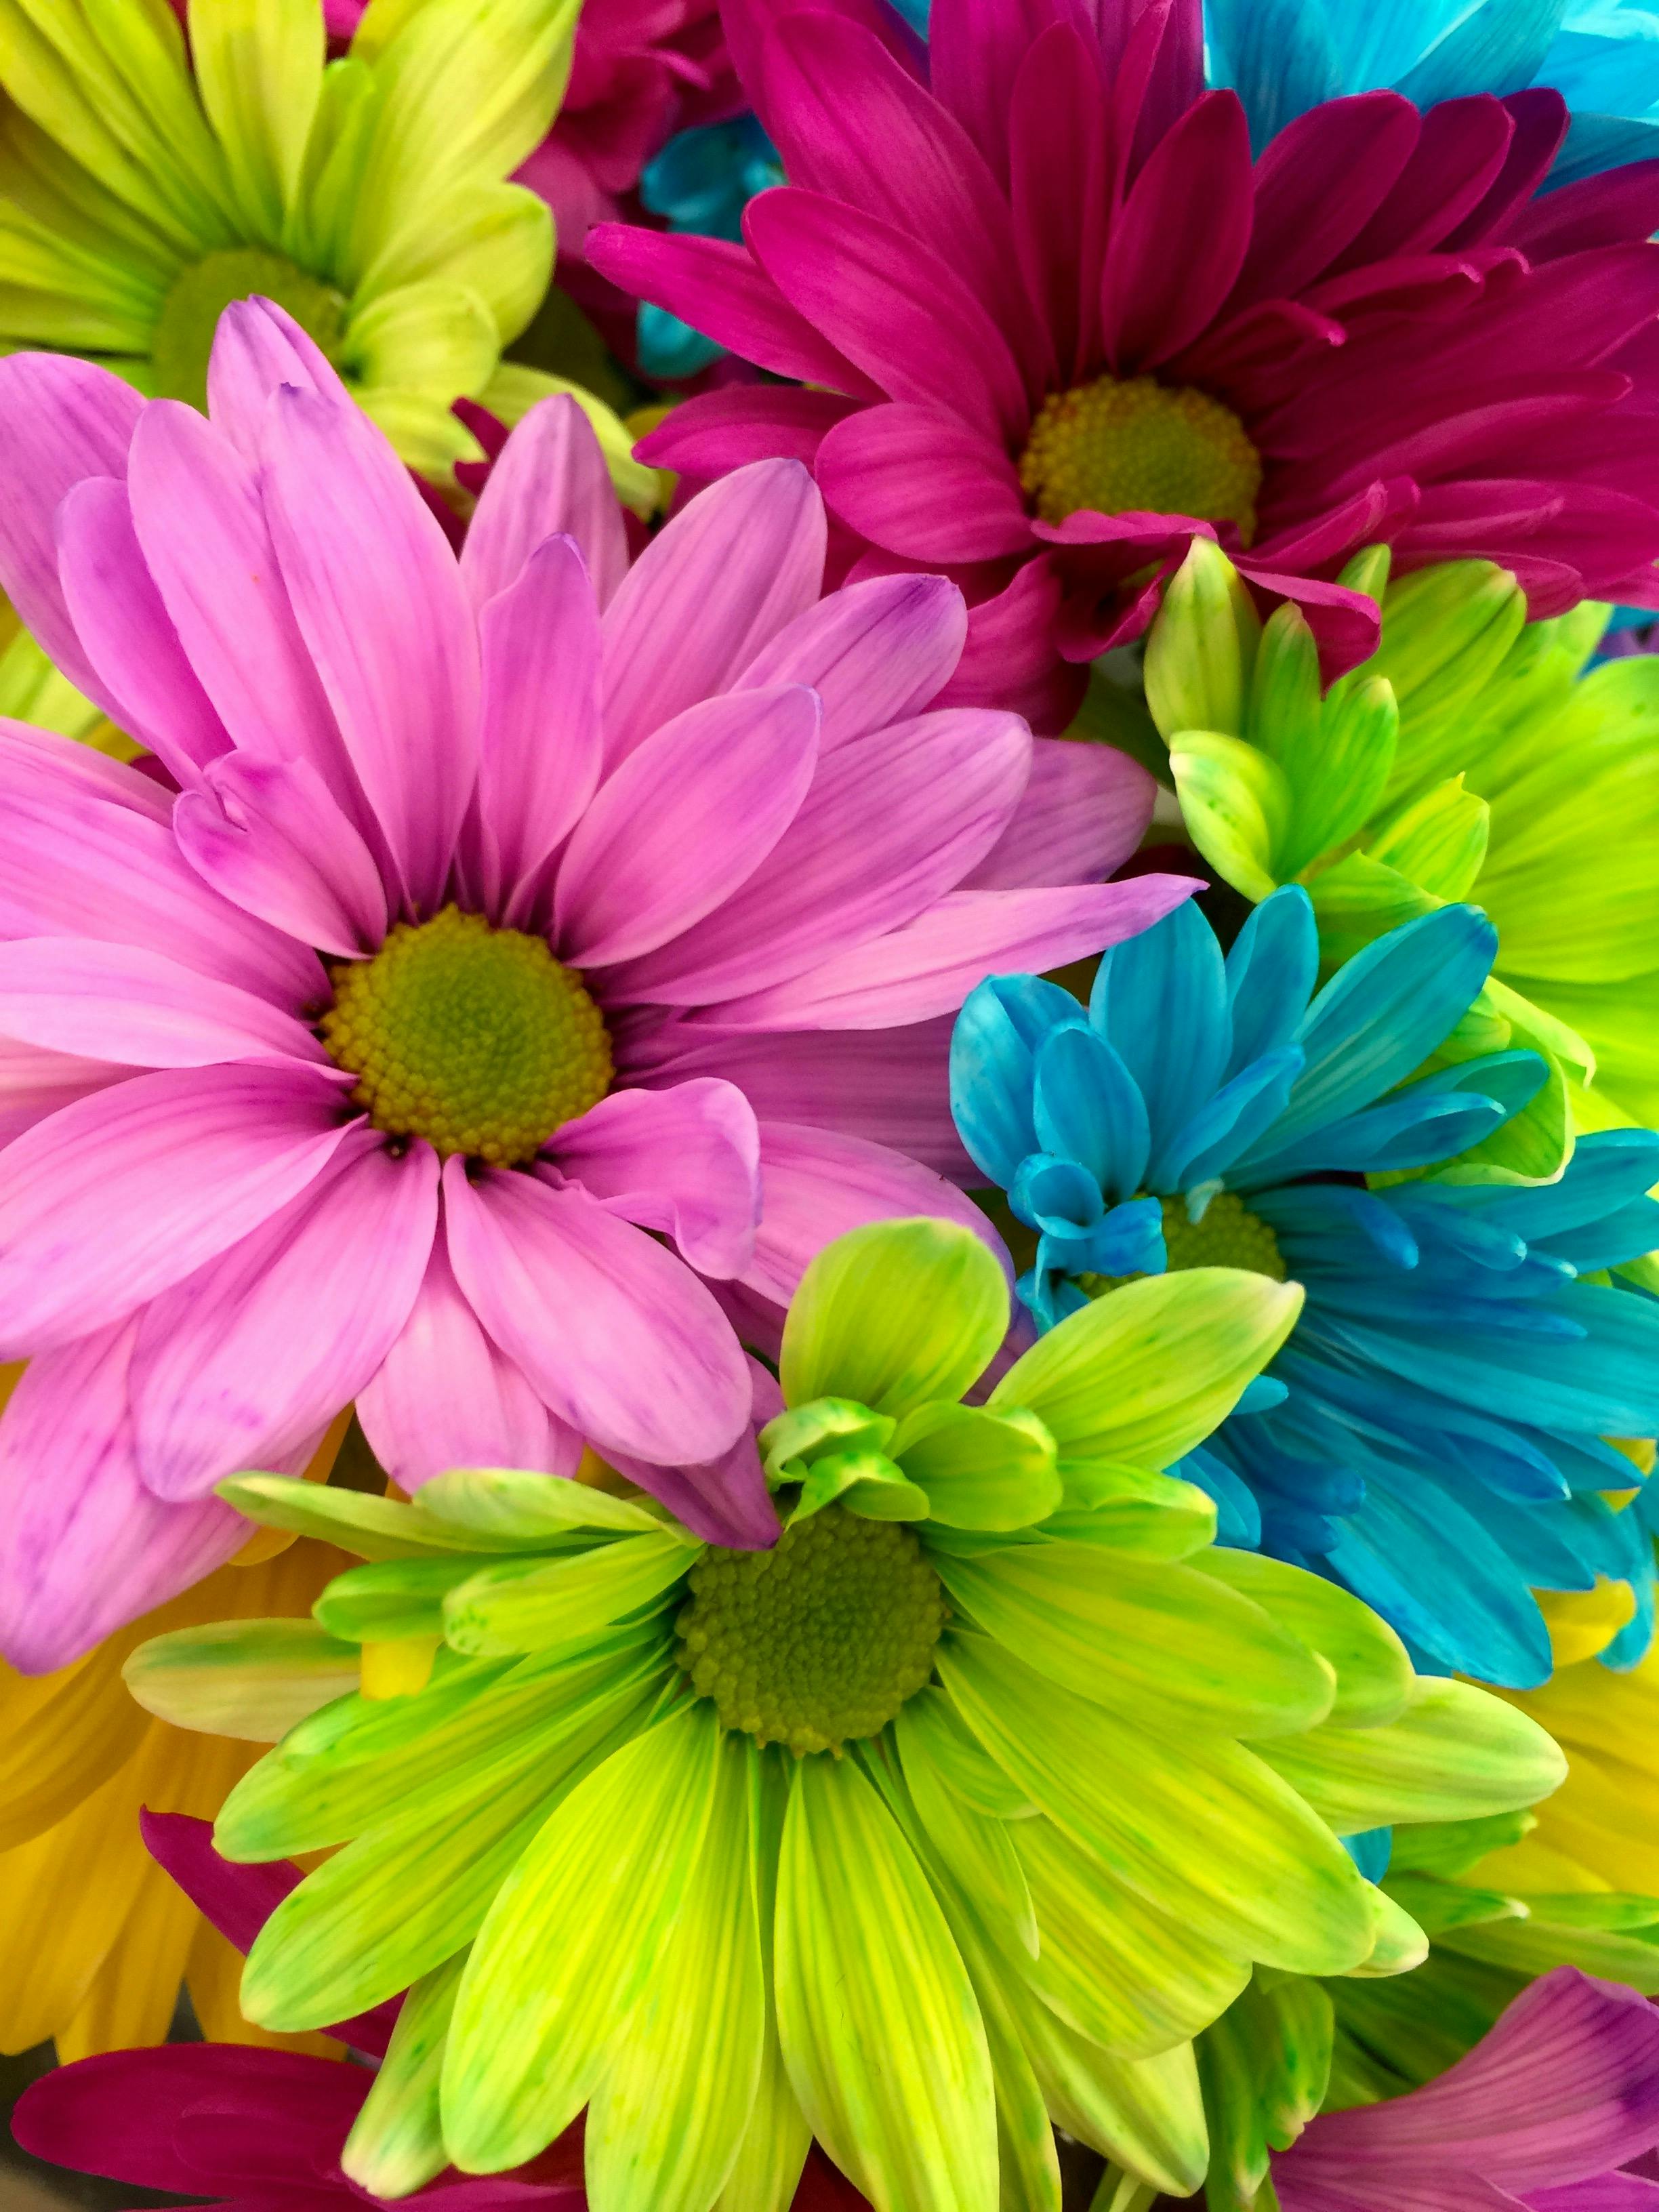 Luxury Pichers Of Flowers 9 Desktop Beauty Single Nice ...